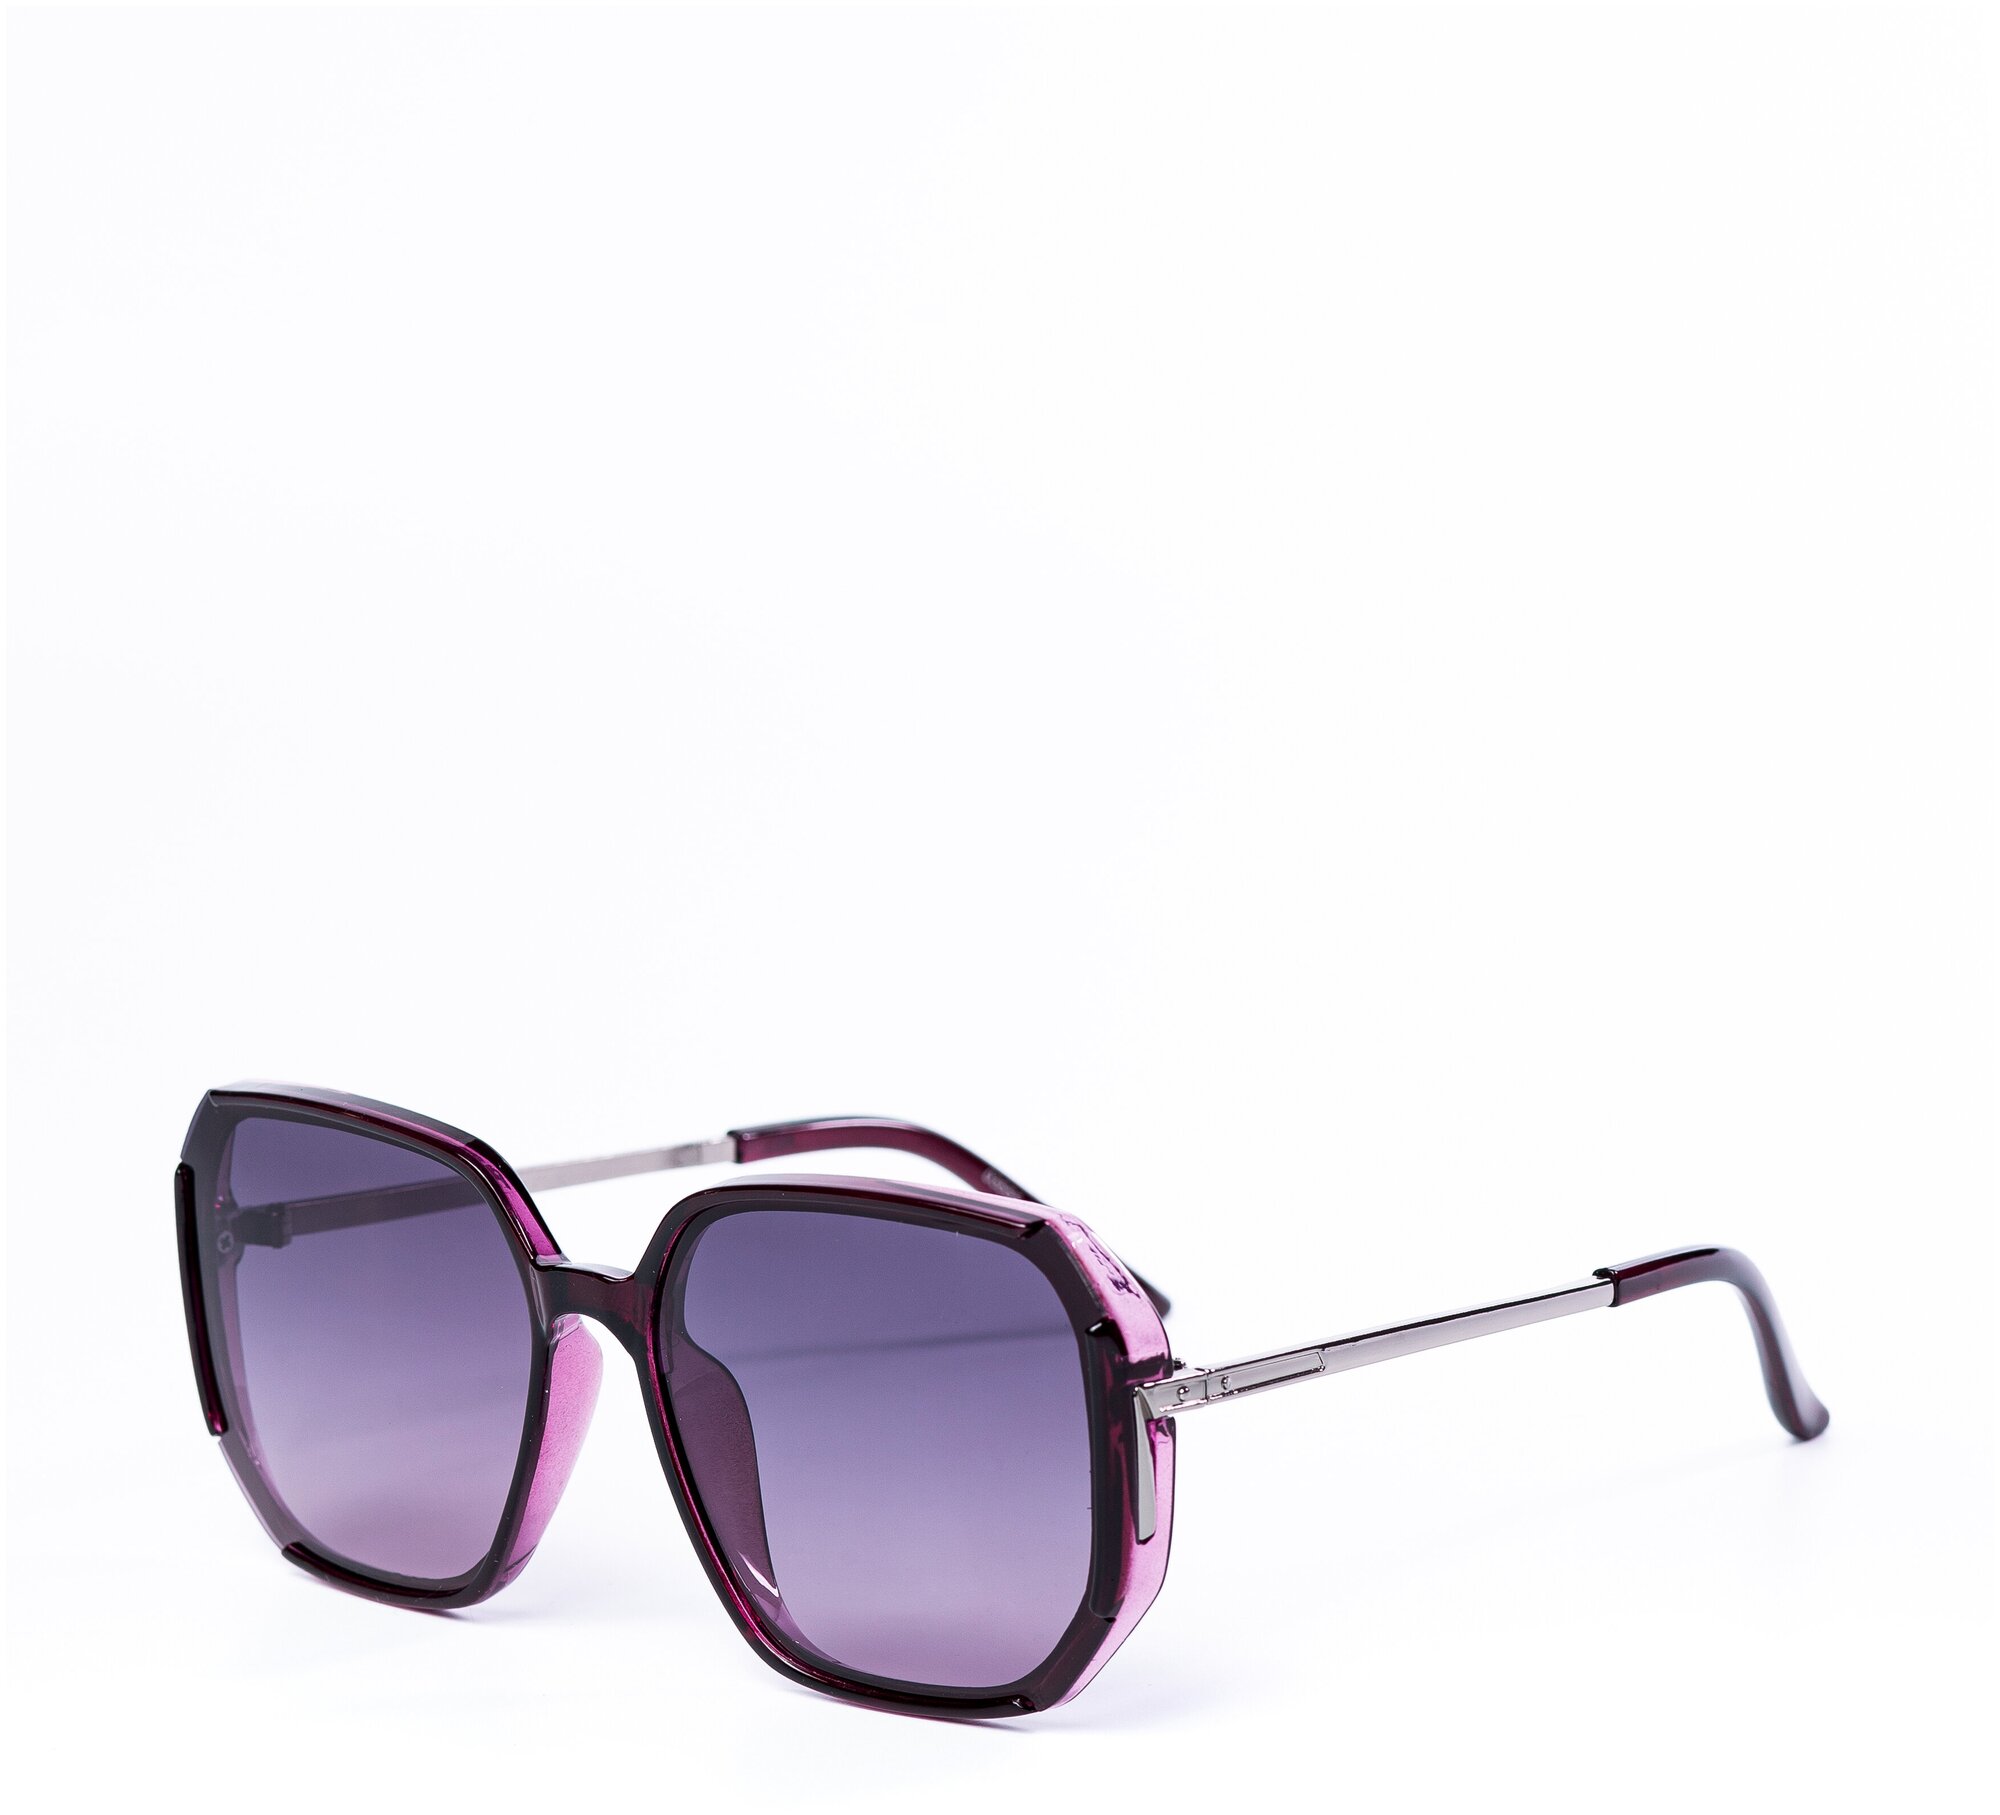 Солнцезащитные очки женские / Оправа квадратная / Стильные очки / Ультрафиолетовый фильтр / Защита UV400 / Темные очки 200422548